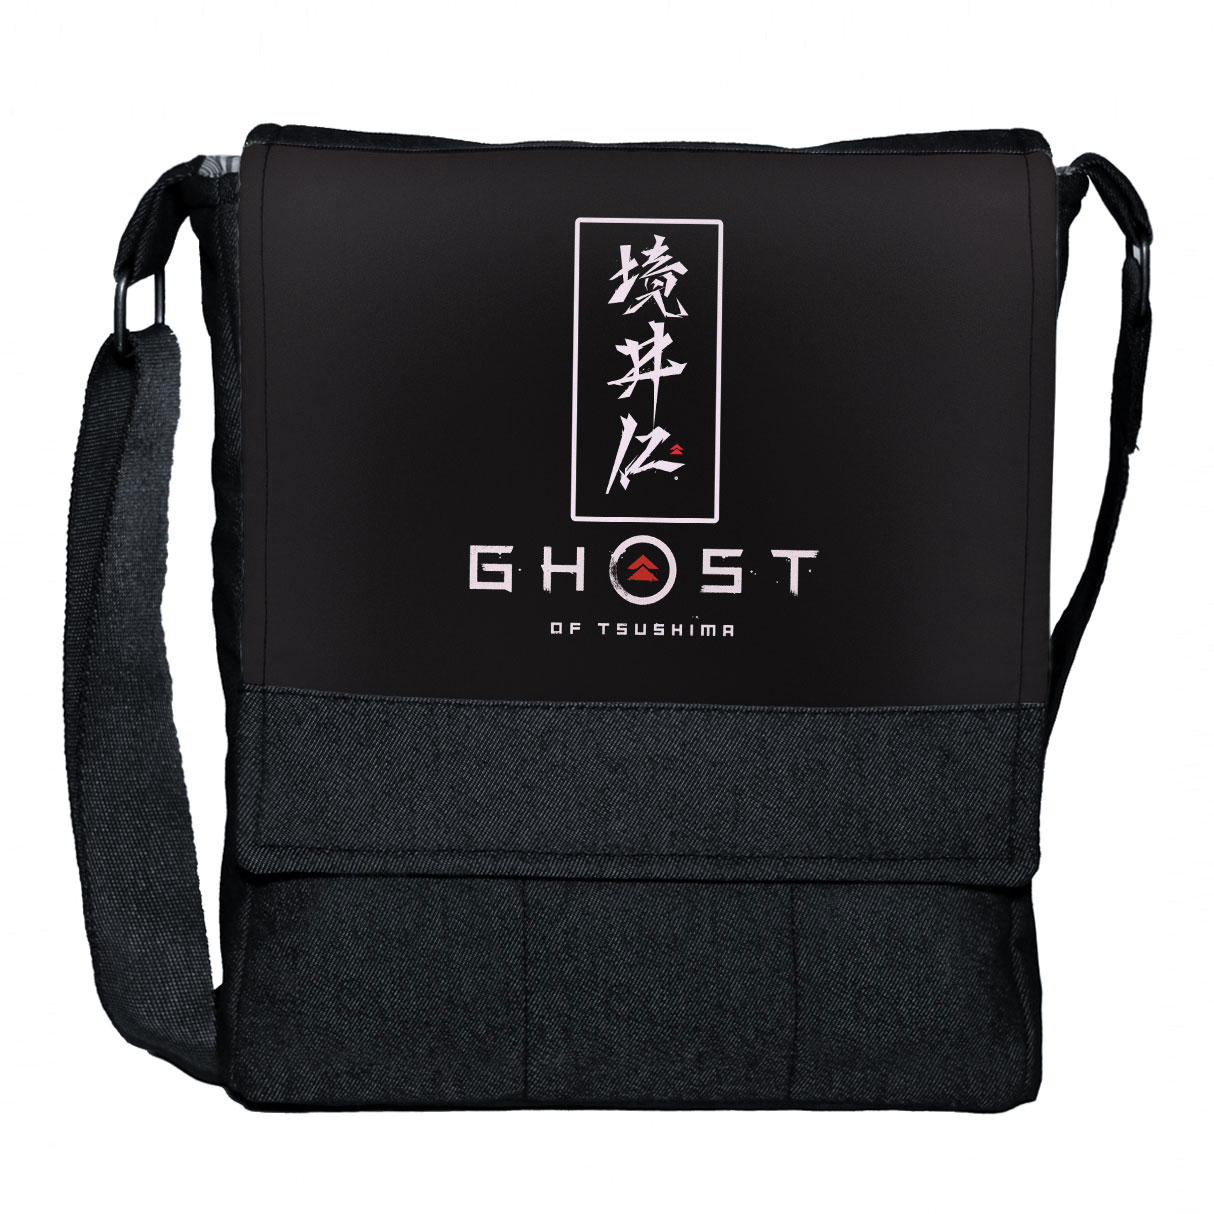 کیف رودوشی چی چاپ طرح بازی Ghost of tsushima کد 65653 -  - 1